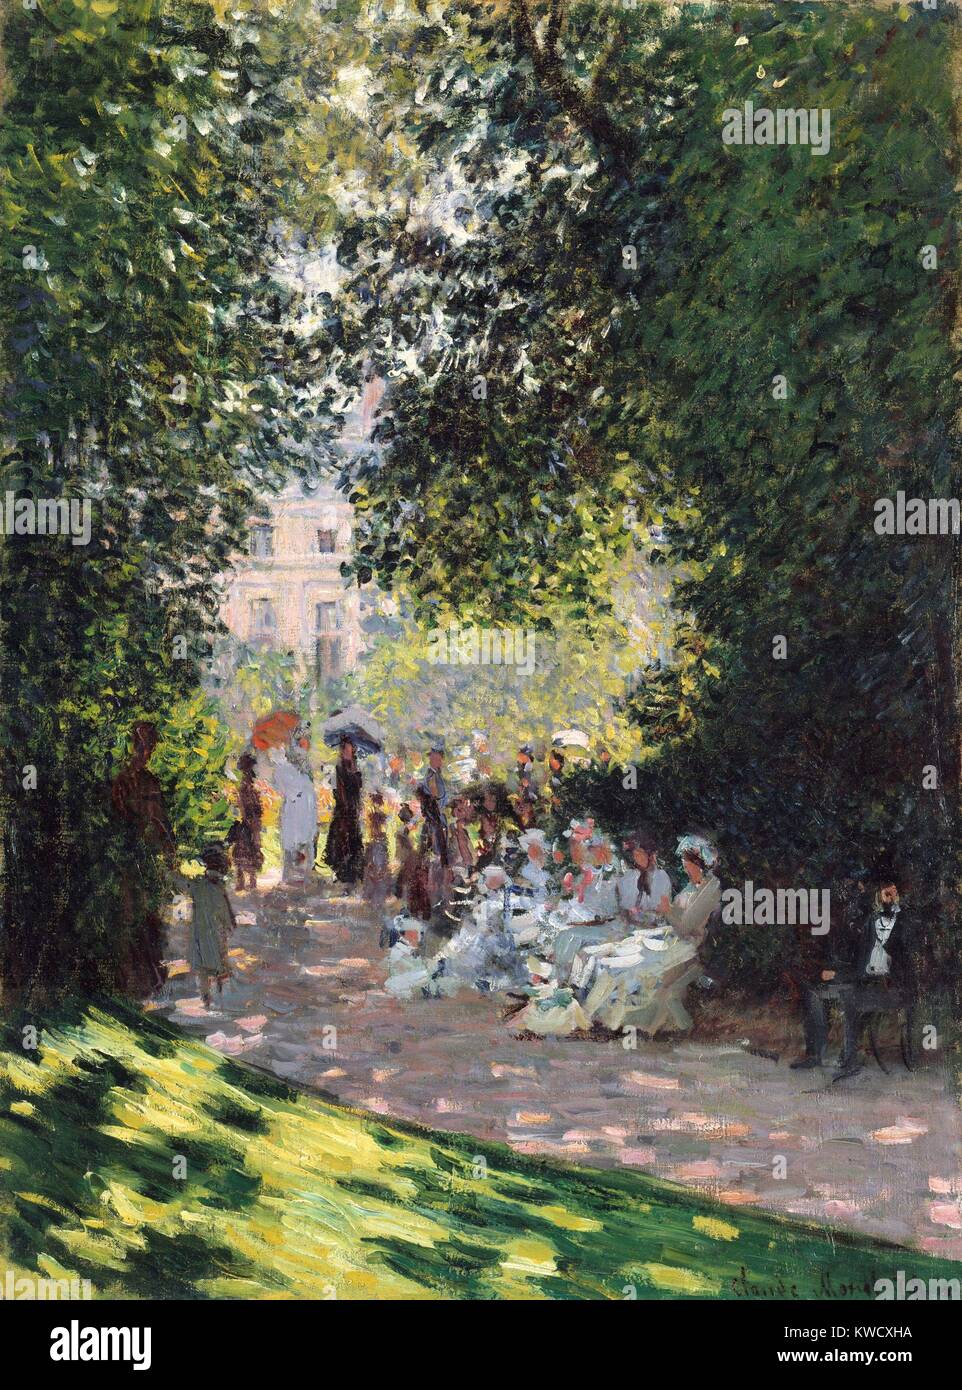 Il Parc Monceau, di Claude Monet, 1878, impressionista francese pittura, olio su tela. Monet applicata la vernice in piccoli daubs su tutta la tela che ha ridotto l'illusione dei volumi e spazi del suo motivo (BSLOC 2017 3 27) Foto Stock